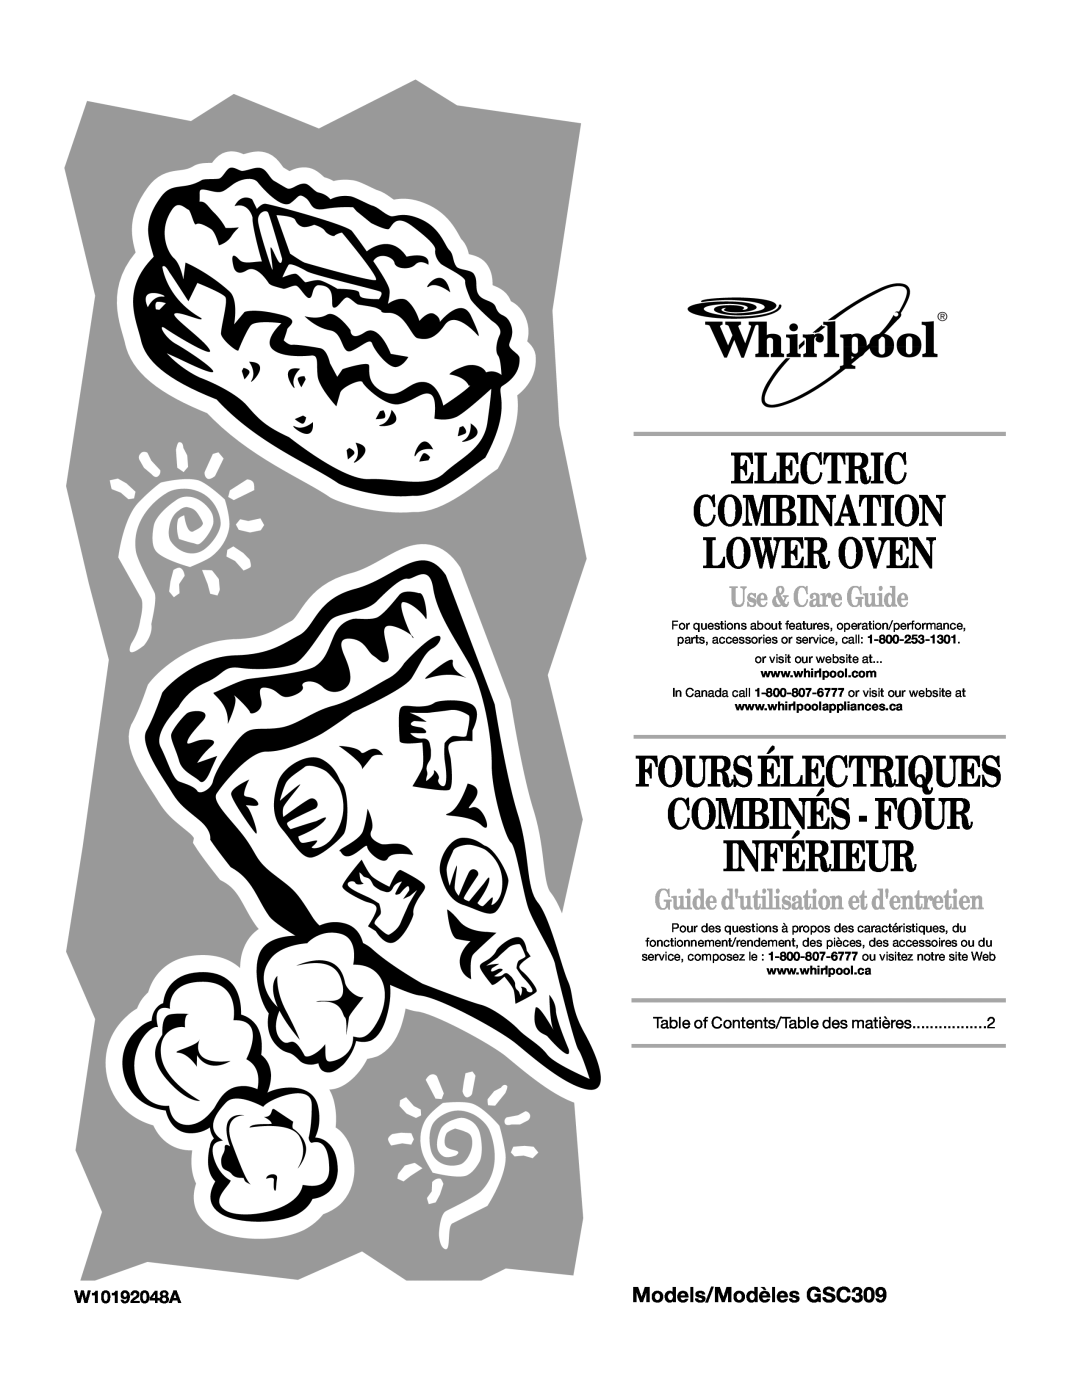 Whirlpool GSC309 manual W10192048A, Electric Combination Lower Oven, Combinés - Four Inférieur, Foursélectriques 